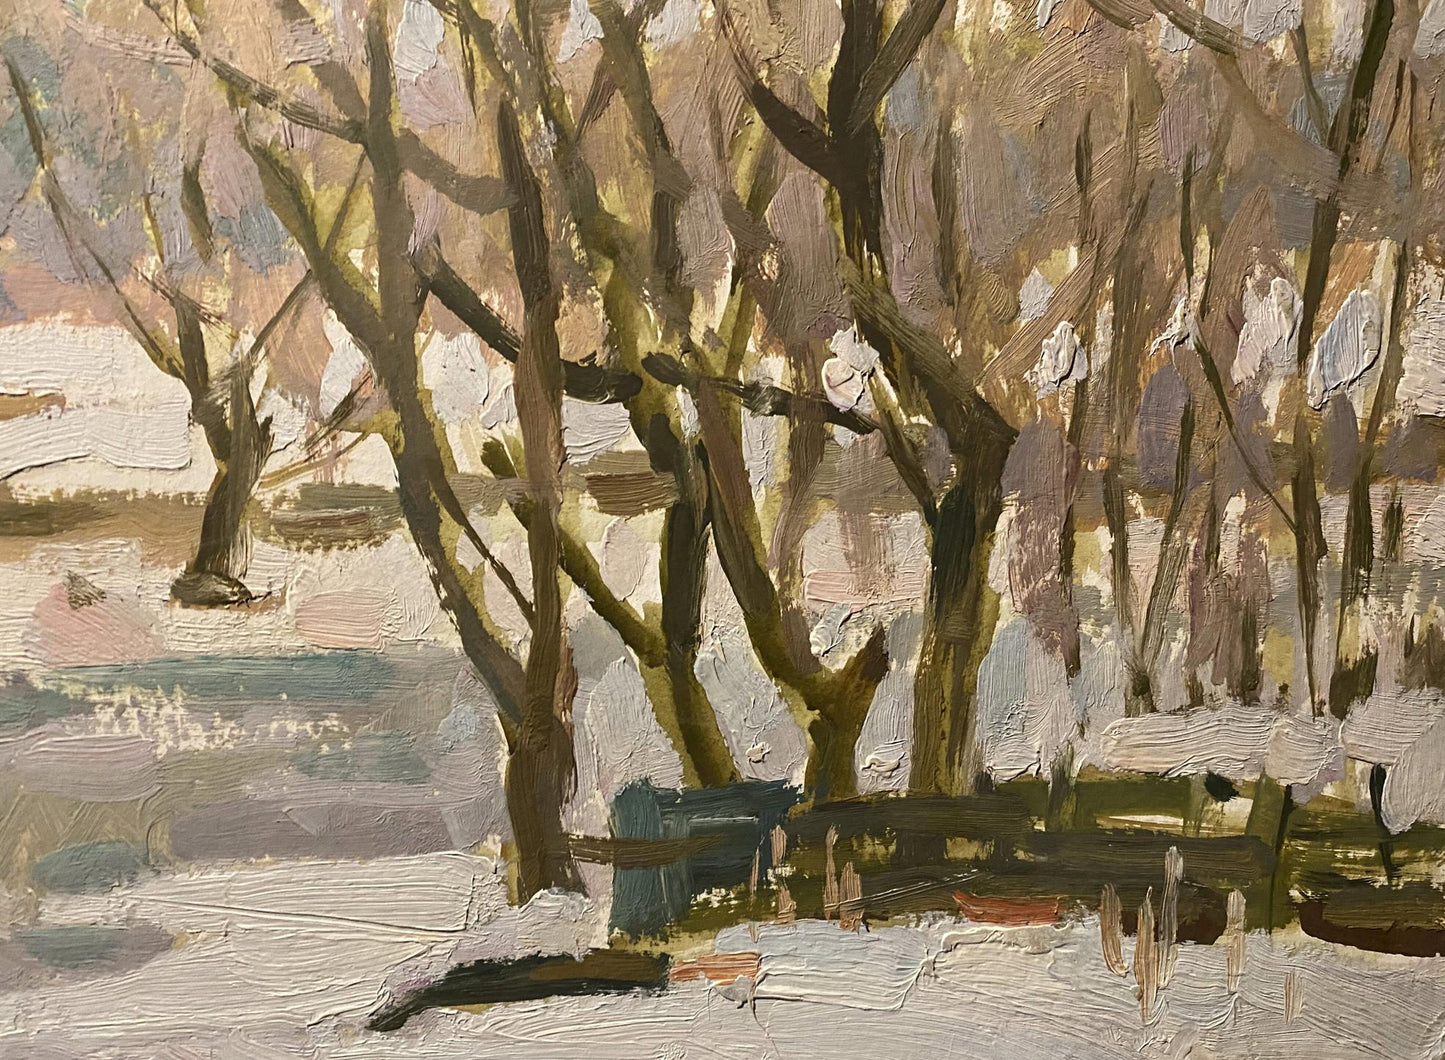 Nikolai Bortnikov's oil portrayal of the Breath of Spring